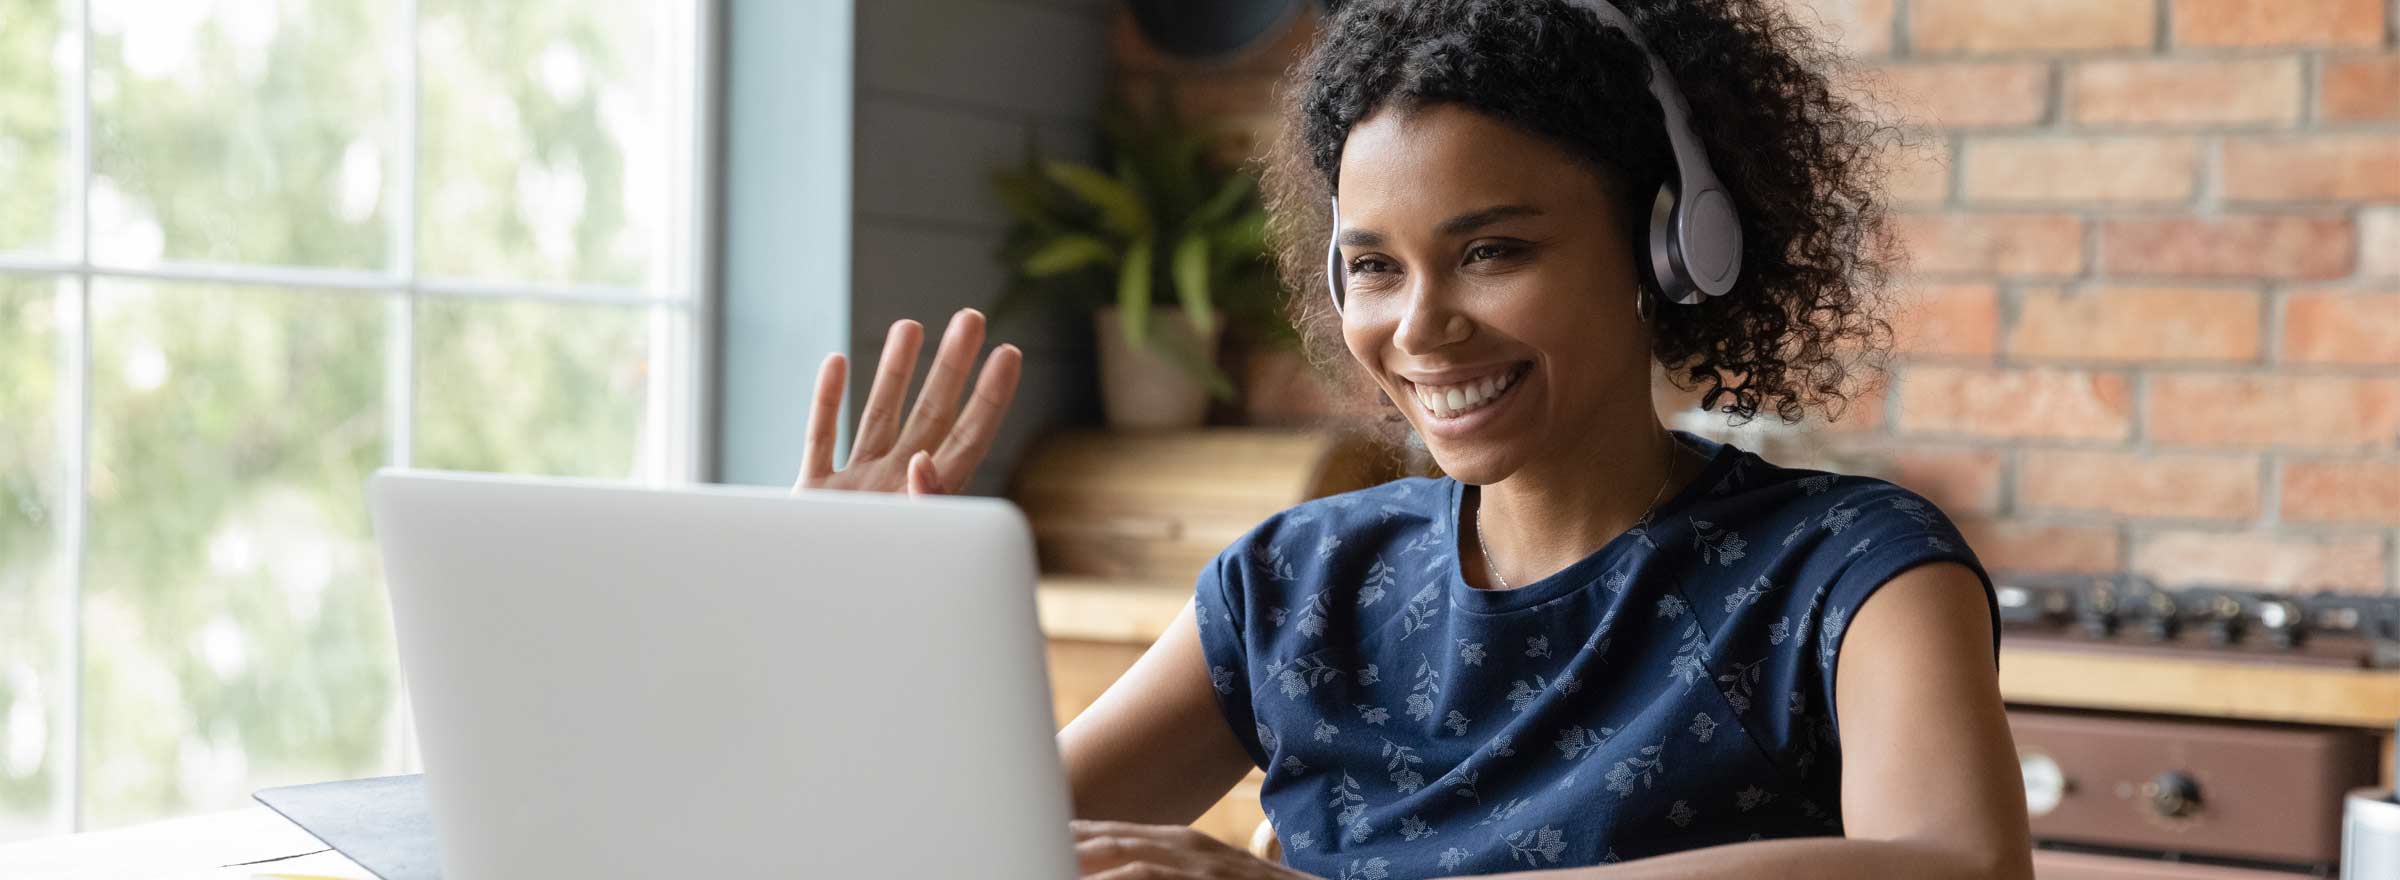 woman smiling and waving at computer screen